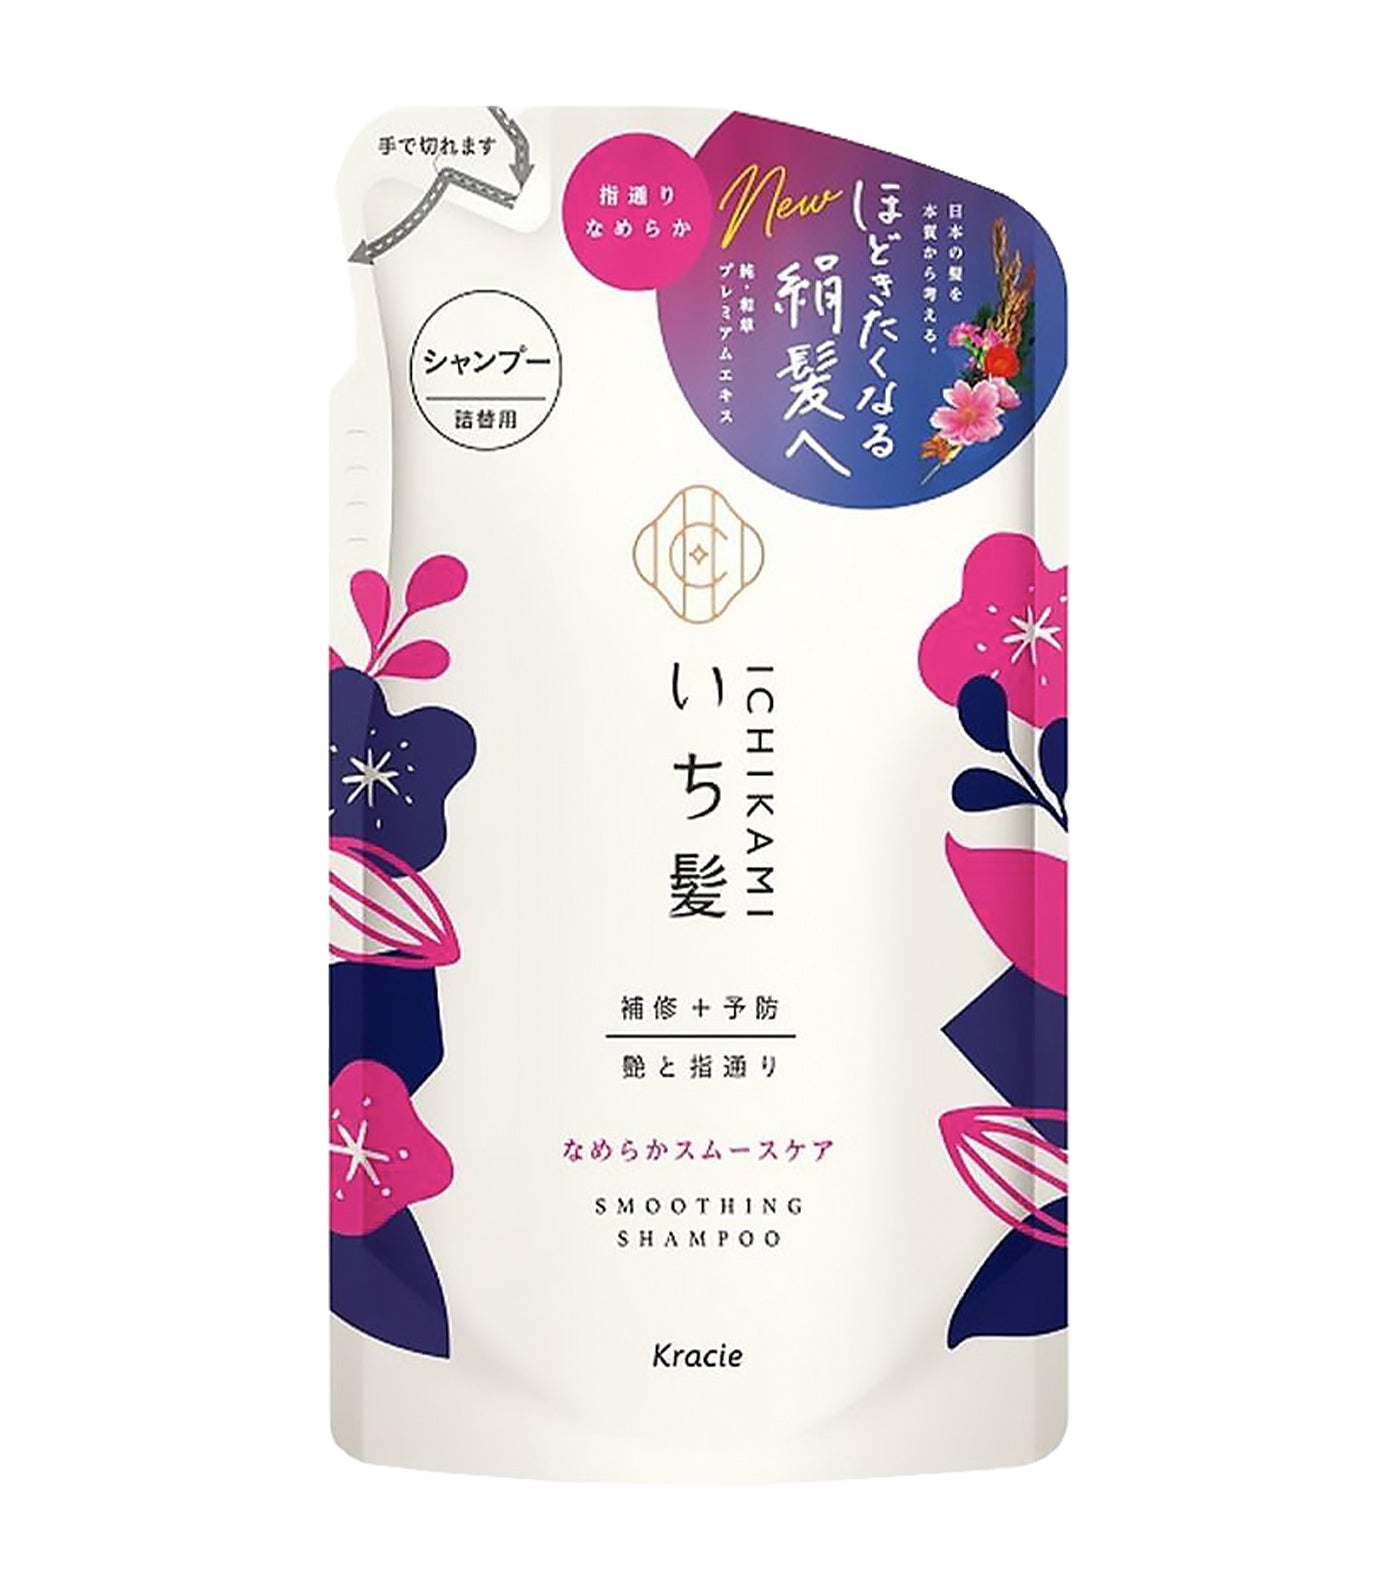 Ichikami Smoothing Shampoo Refill Pack